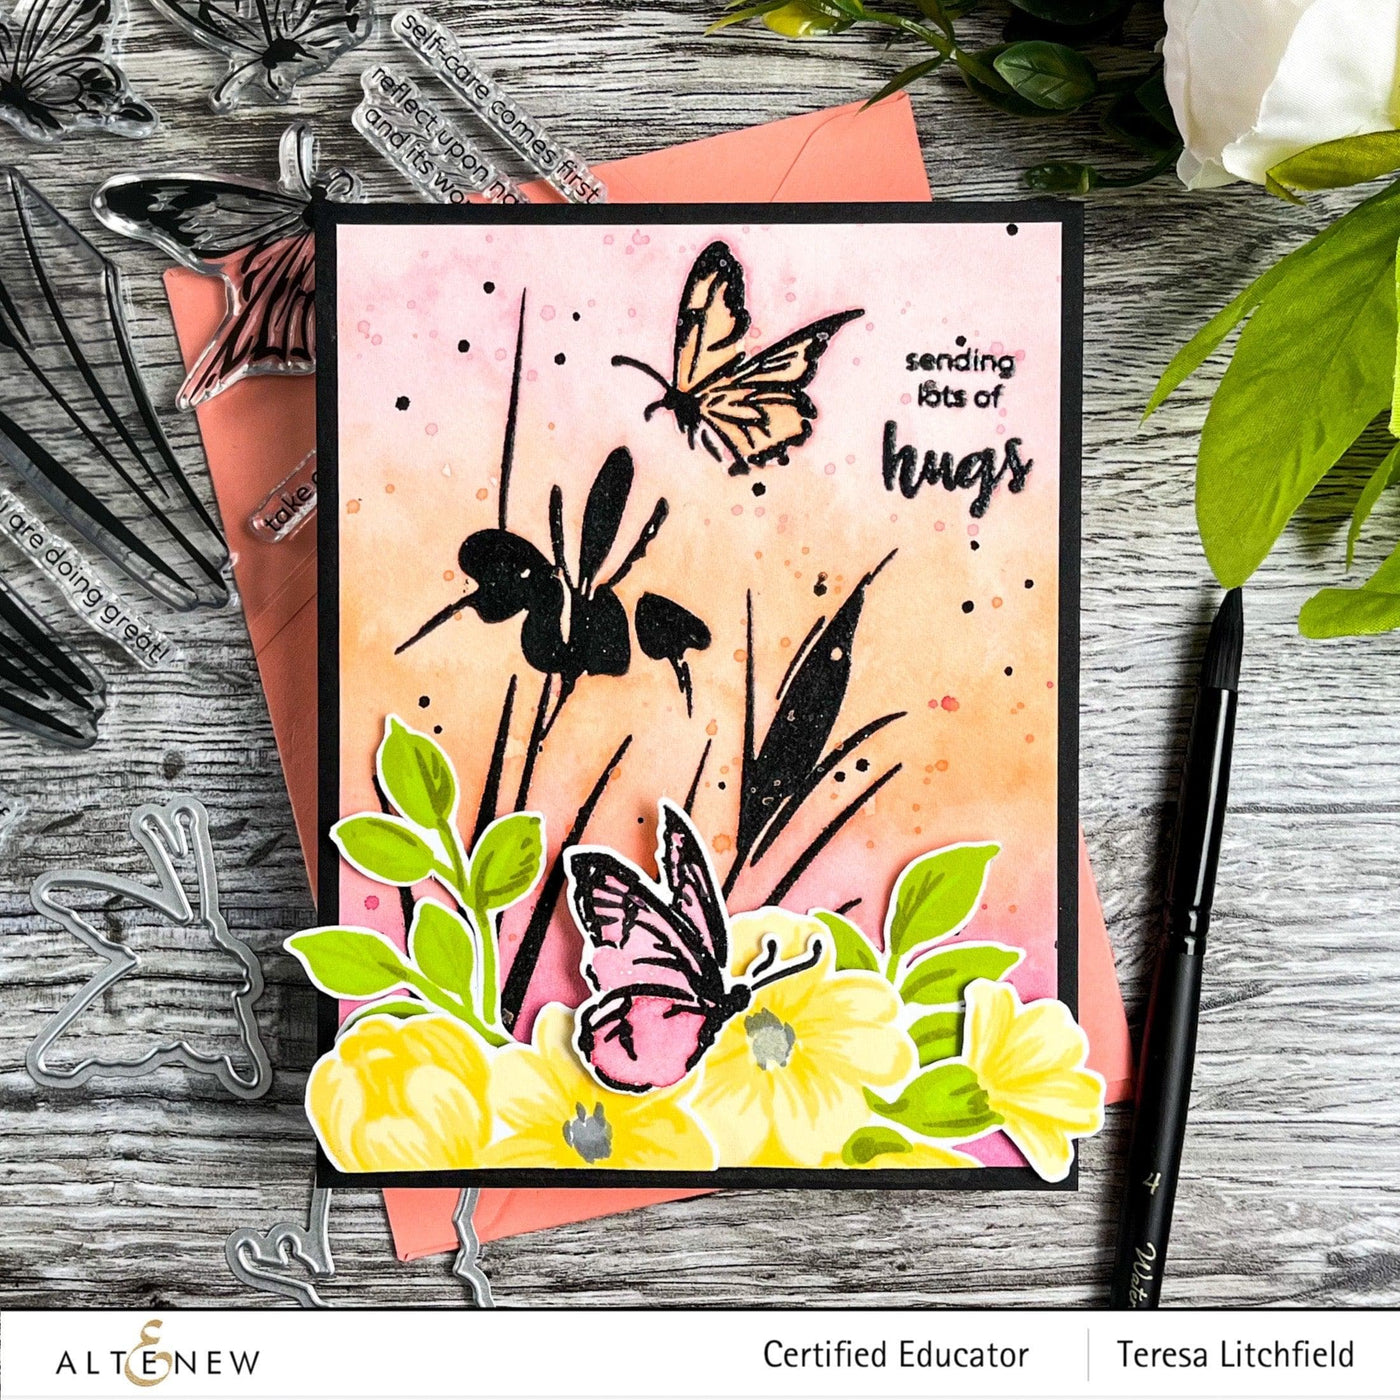 Altenew Stamp & Die Bundle Morning Flowers Stamp & Die Bundle